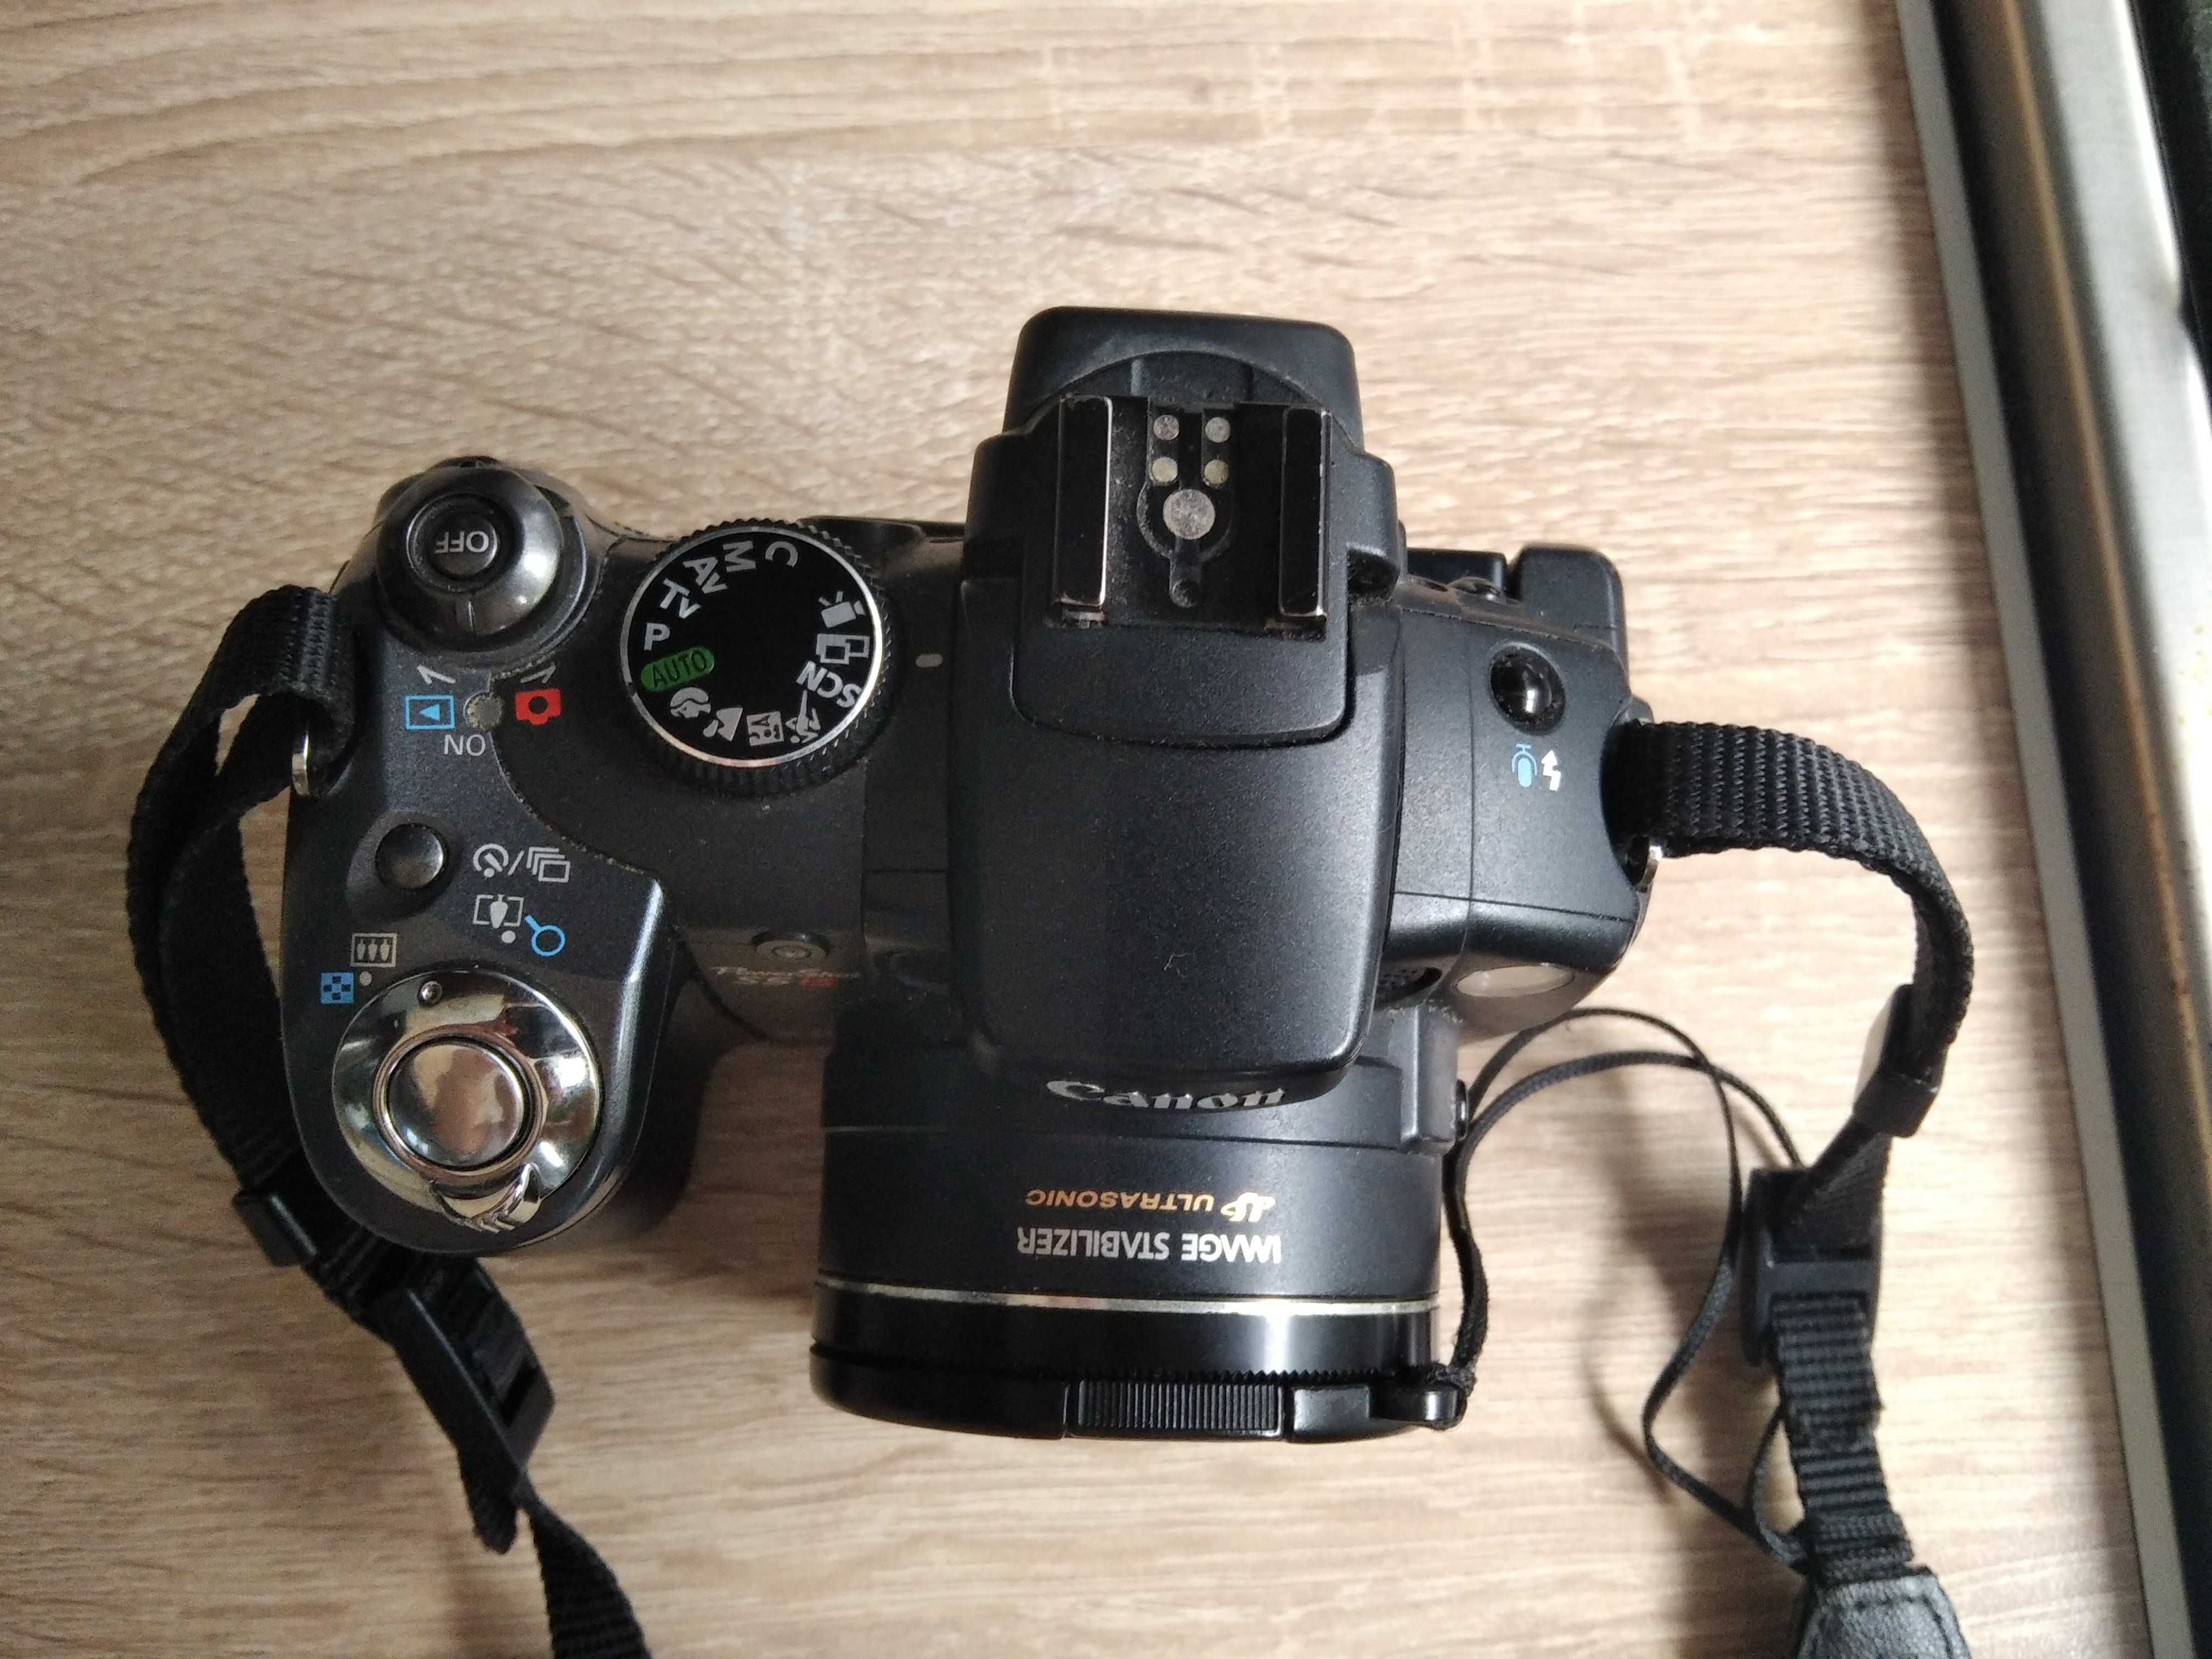 Aparat Canon PC 1234